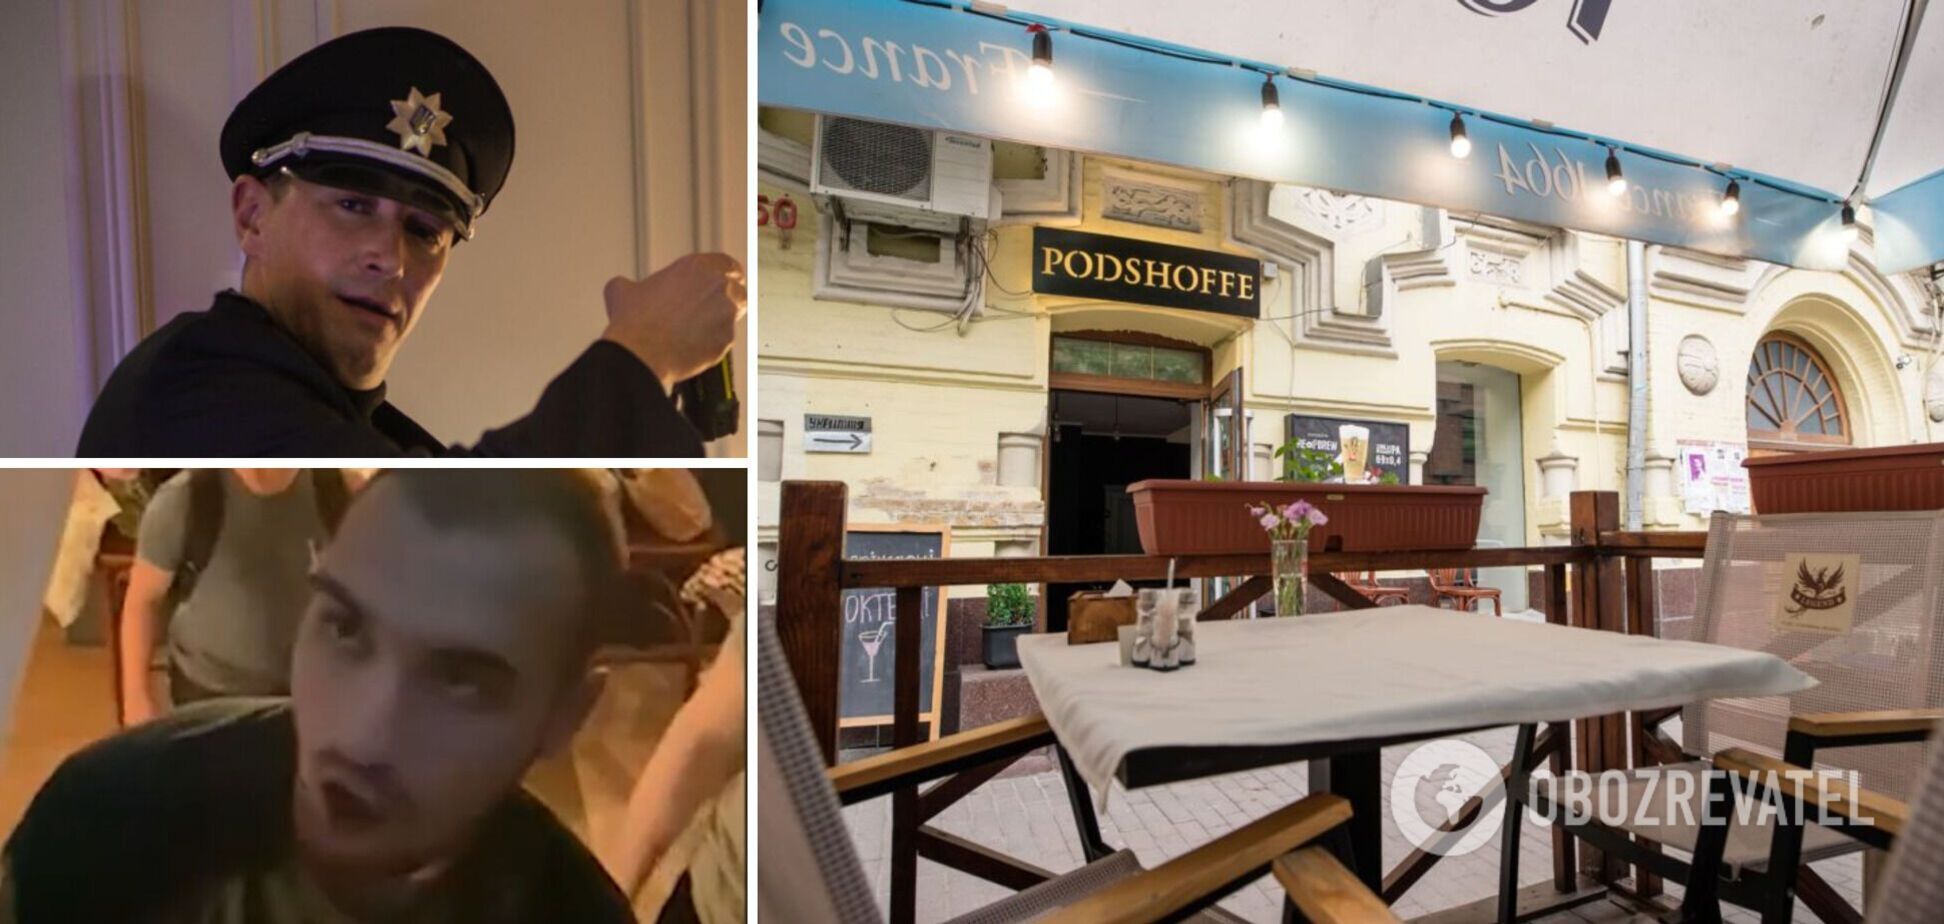 Нарушения карантина, музыка до утра и танцы на столах: как футболист открыл ресторан в подвале дома в центре Киева